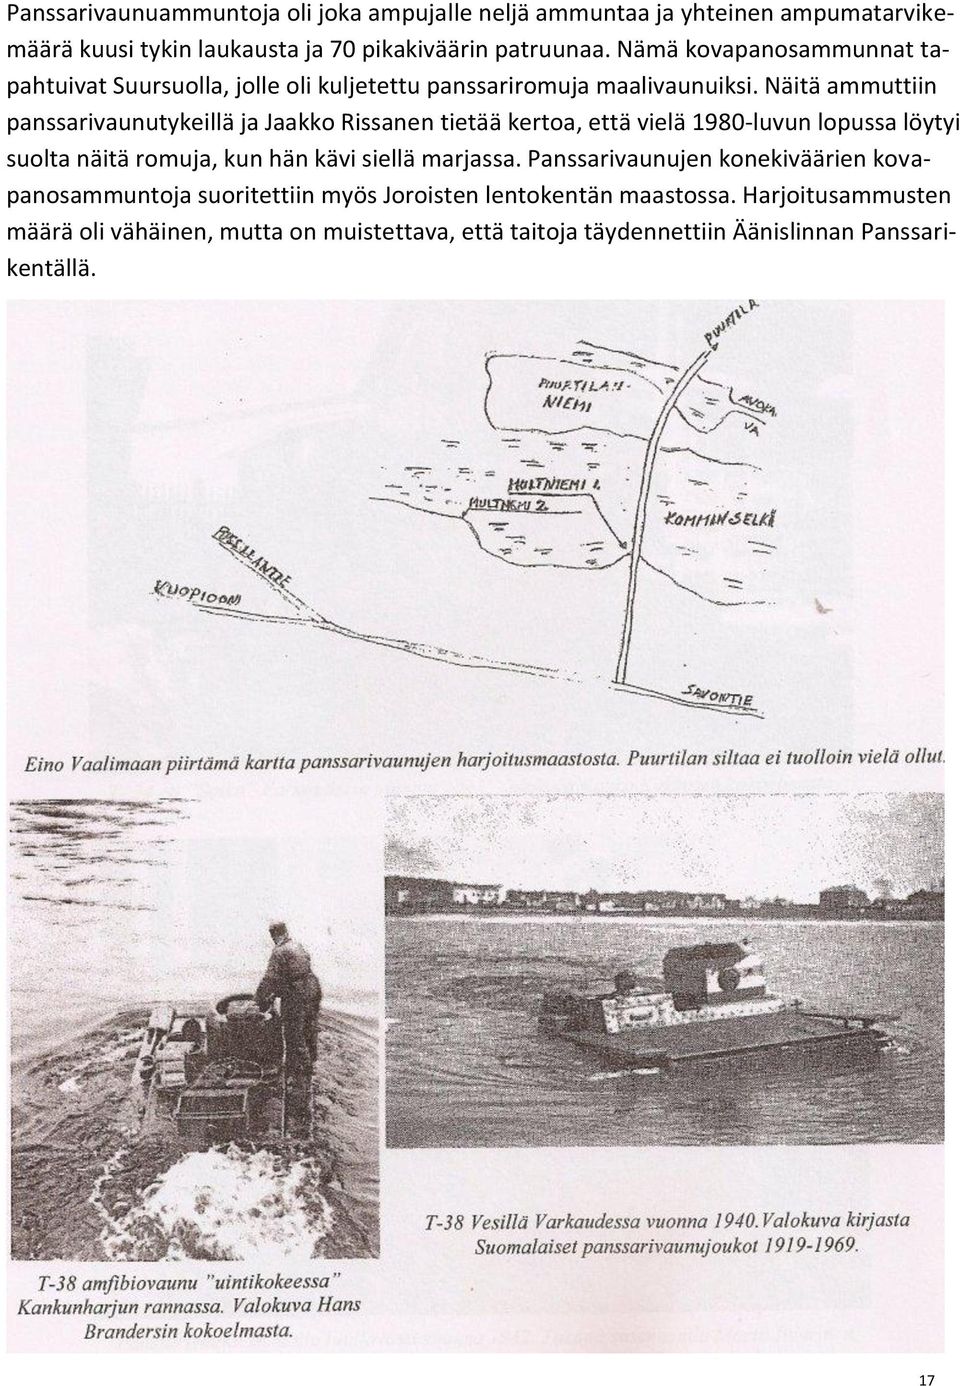 Näitä ammuttiin panssarivaunutykeillä ja Jaakko Rissanen tietää kertoa, että vielä 1980-luvun lopussa löytyi suolta näitä romuja, kun hän kävi siellä